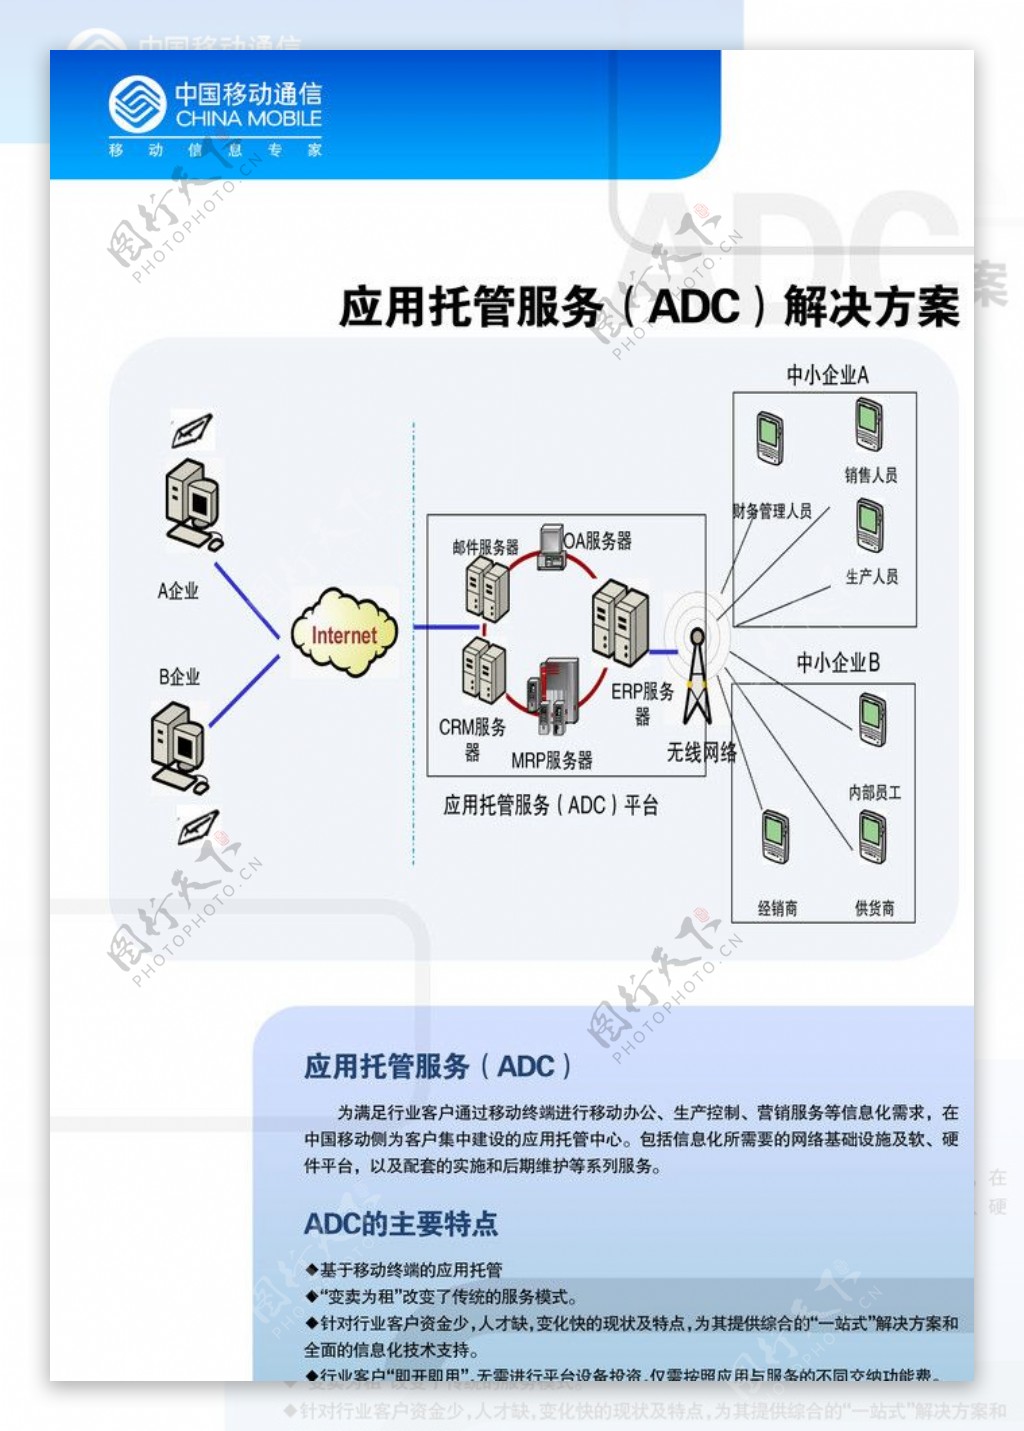 集团业务ADC图片